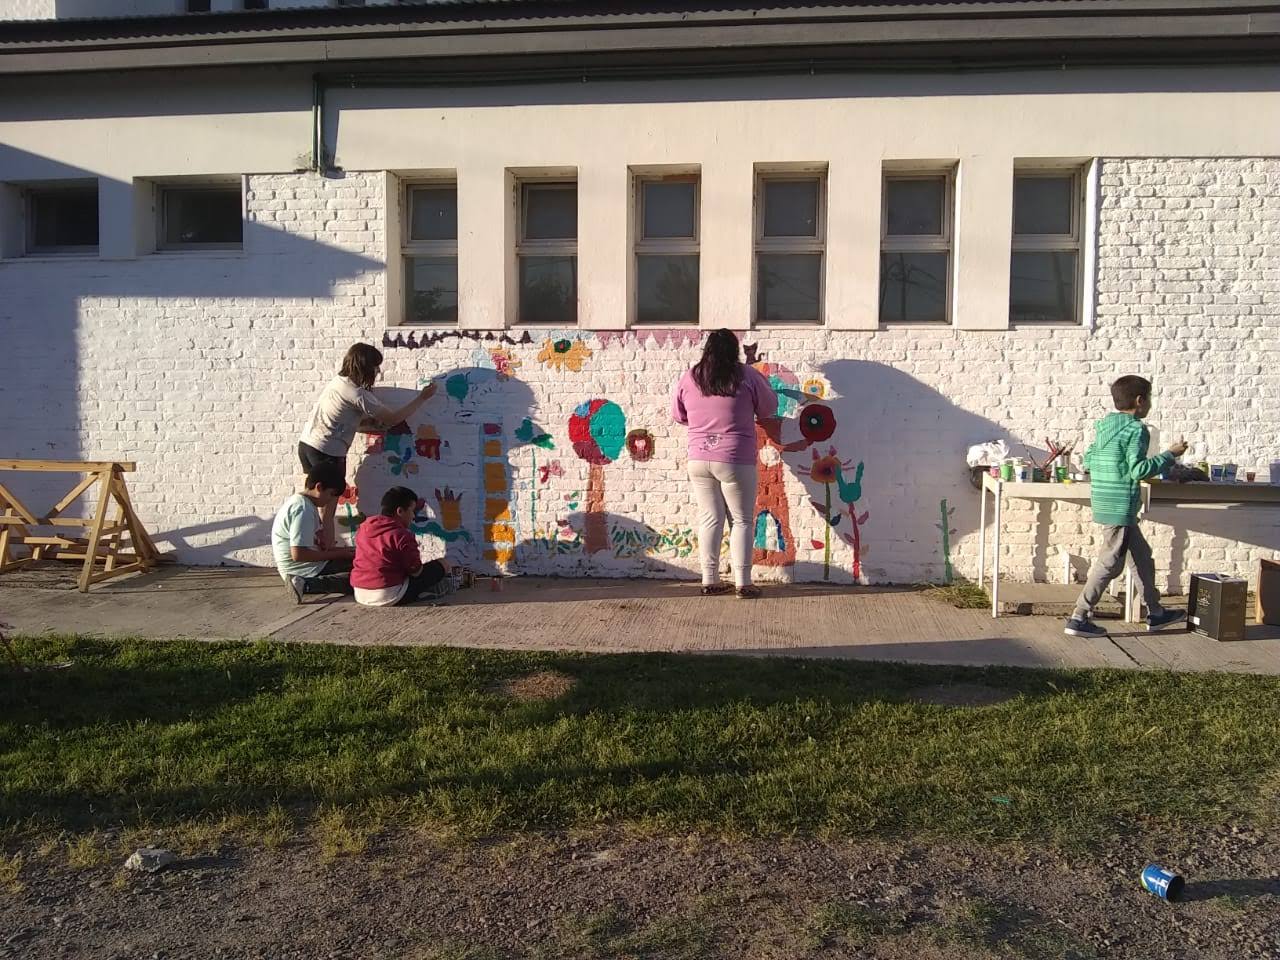 La imagen muestra unos niños y niñas pintando murales sobre una pared blanca